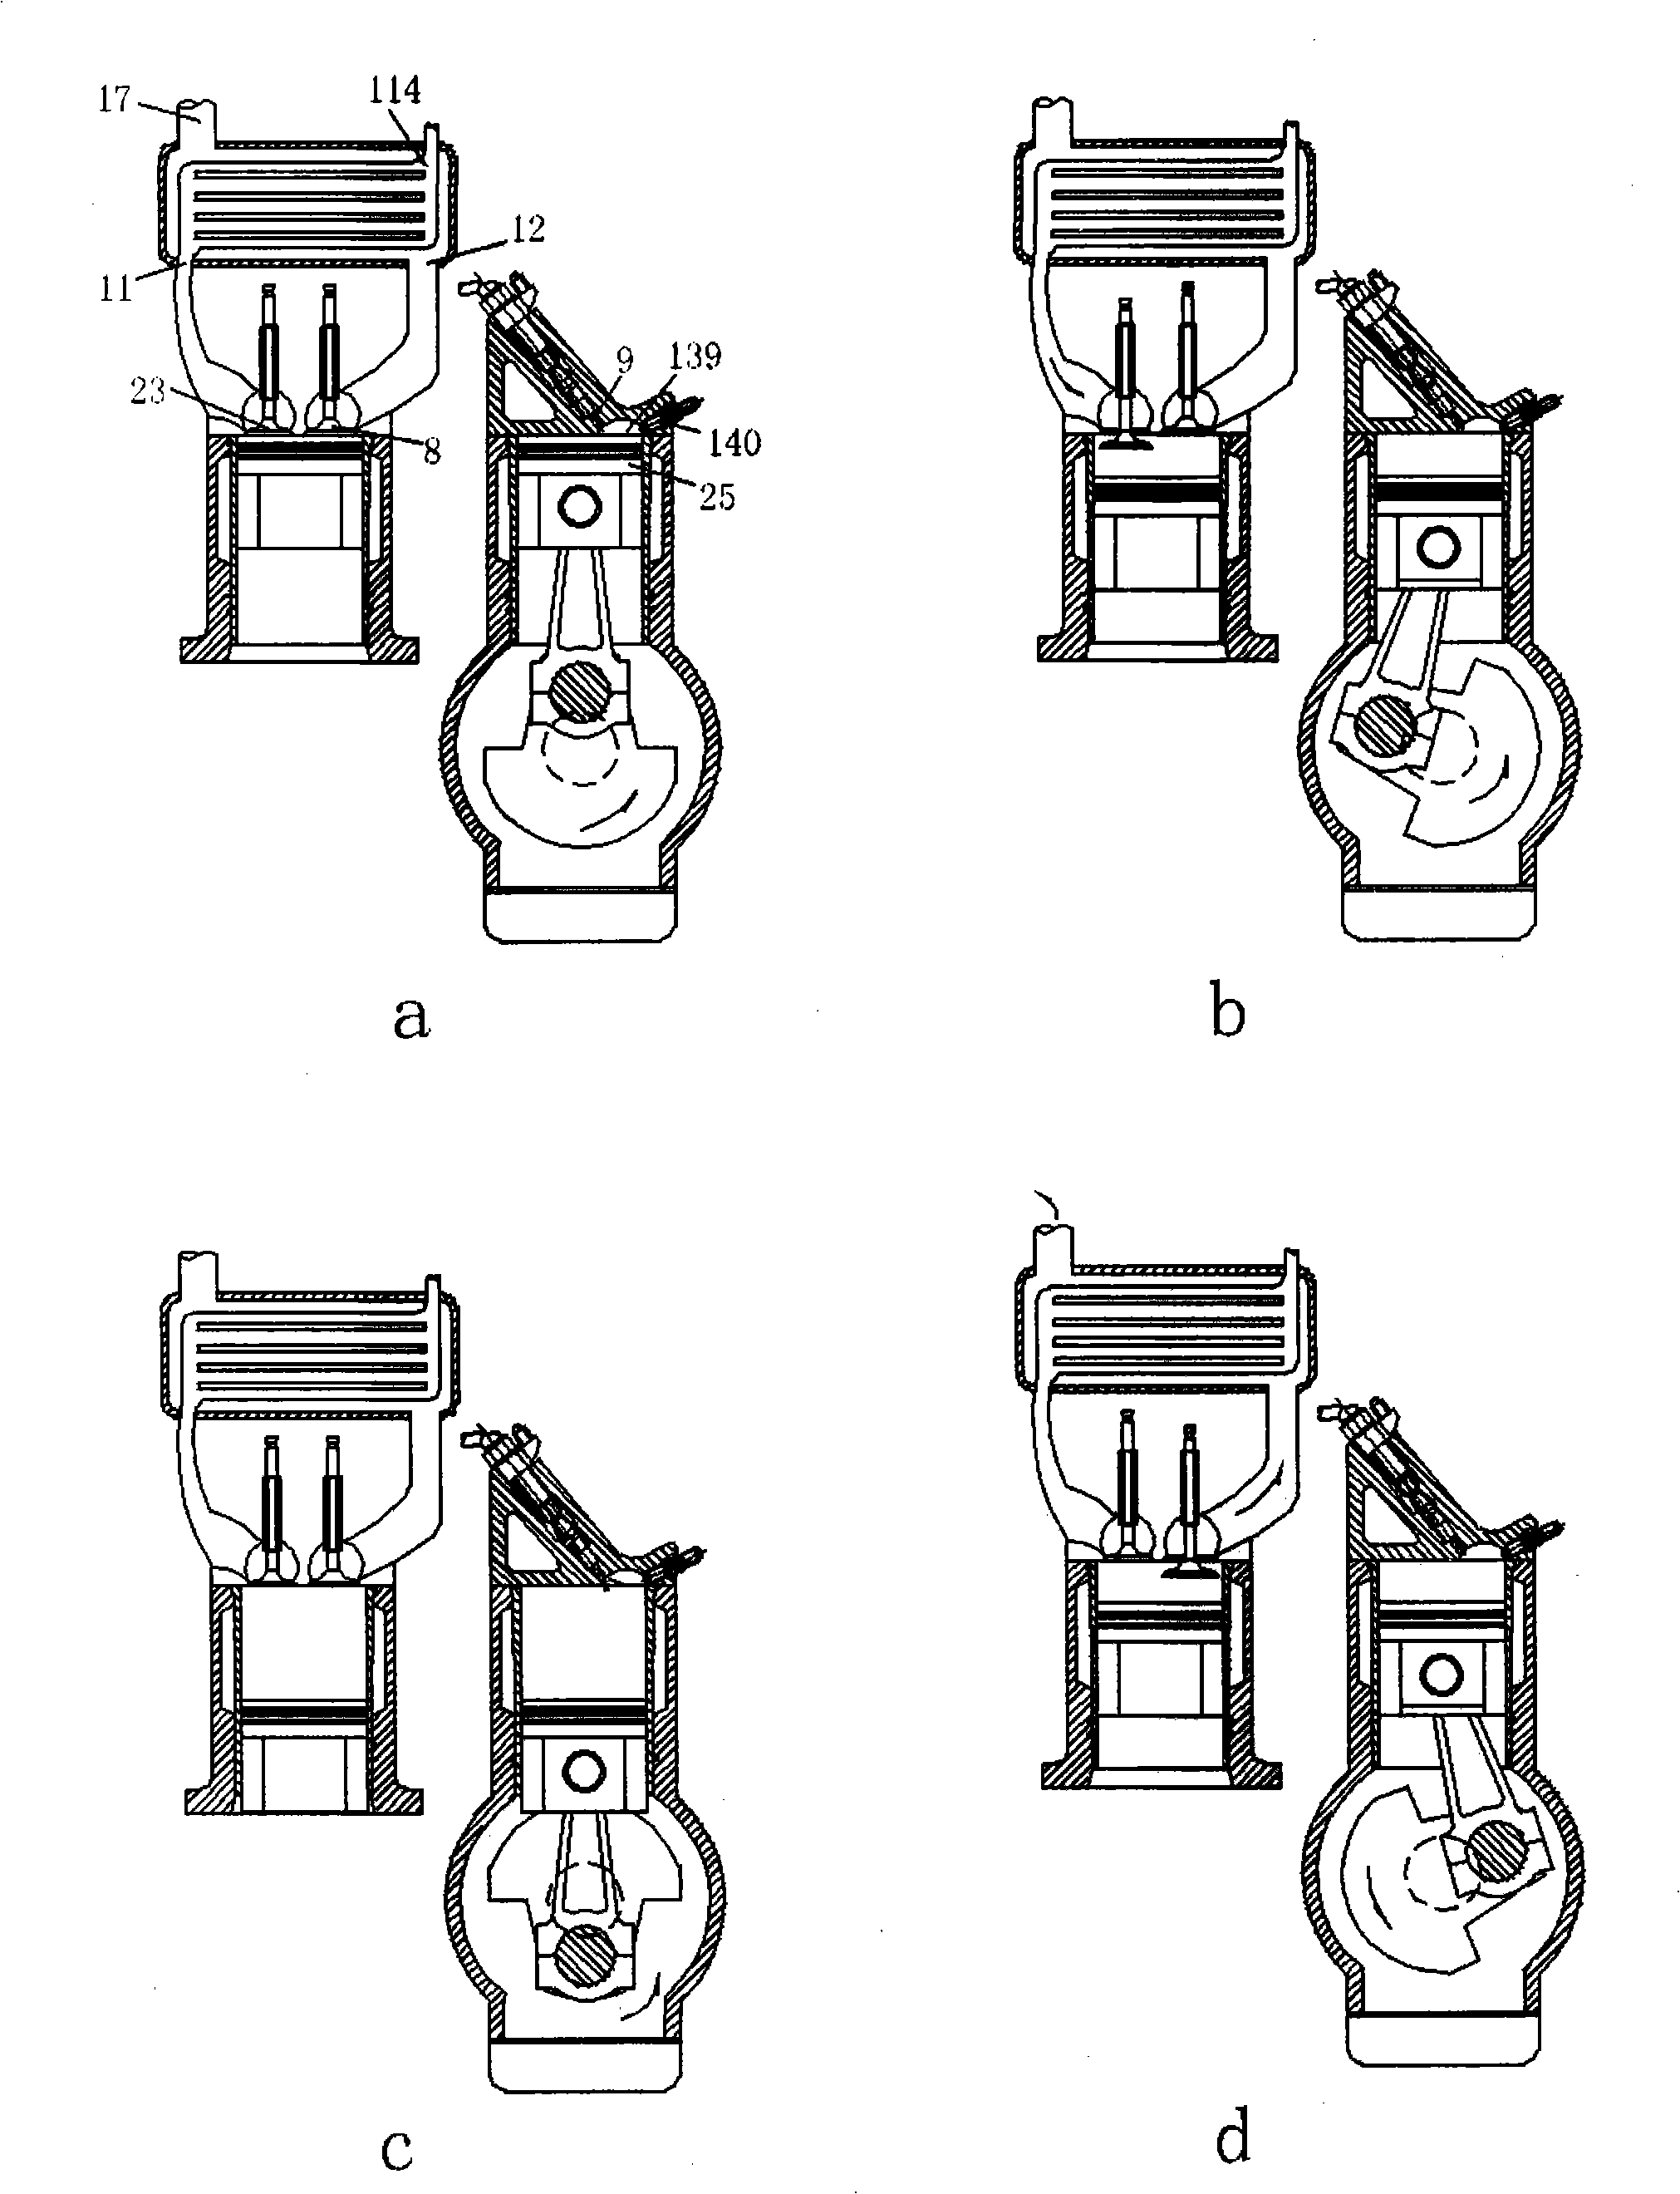 Internal-burning type gas-heating machine